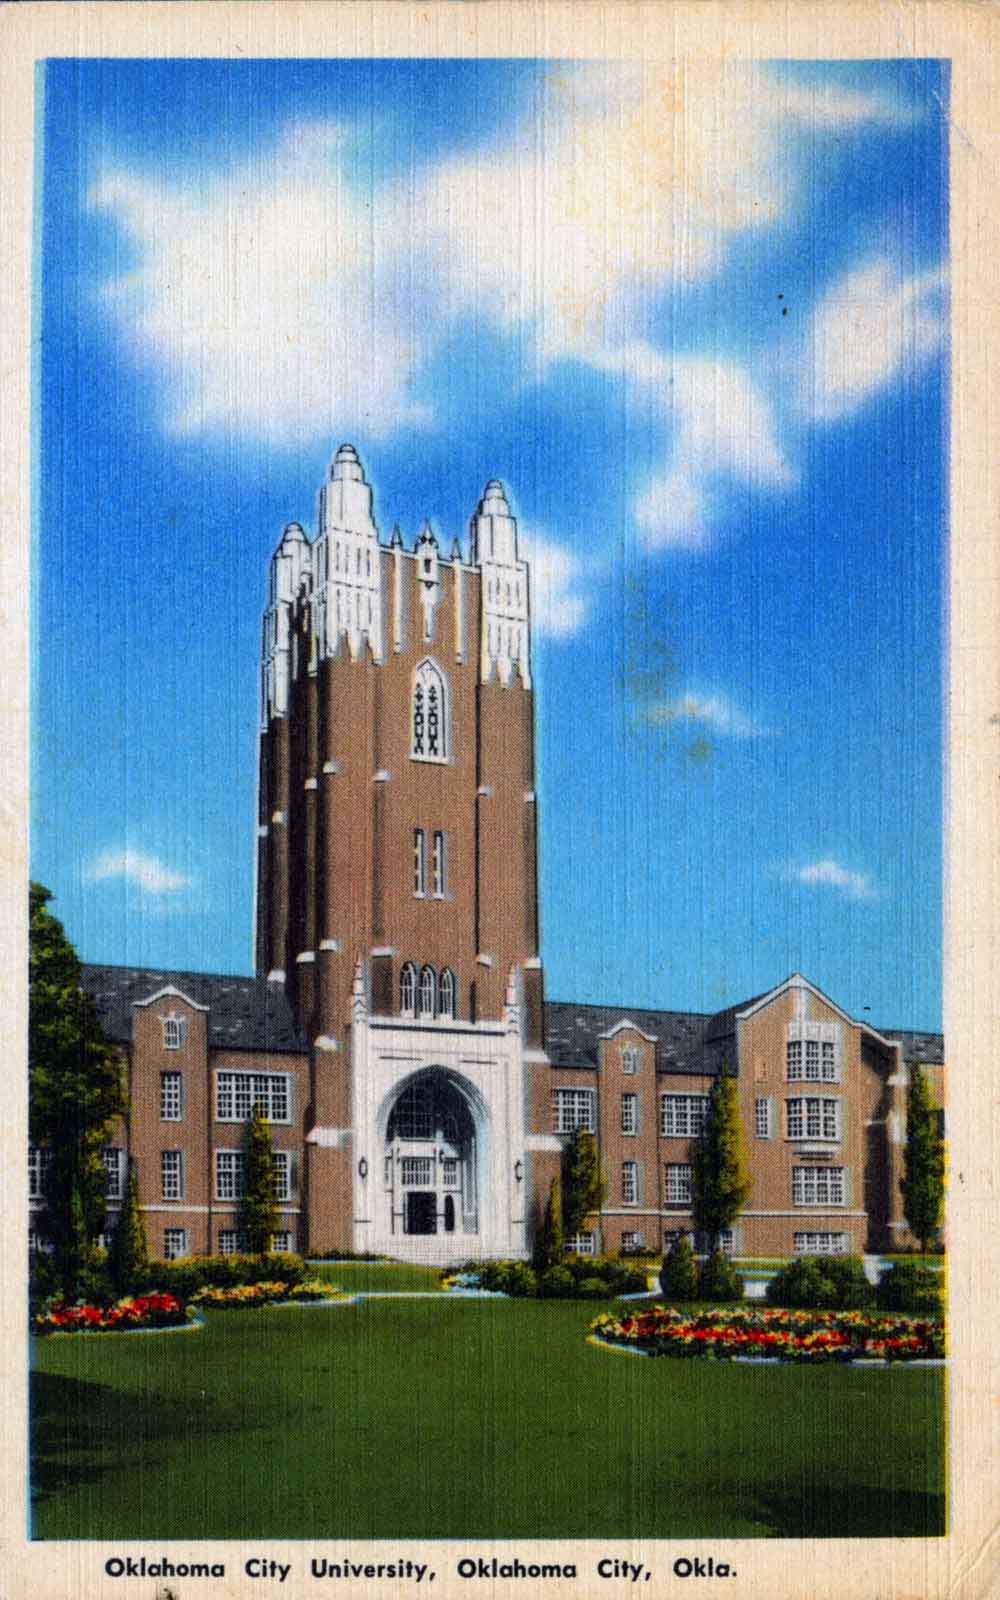 (RACp.2010.16.25) - Adminsitration Building, Oklahoma City University, c. 1940s